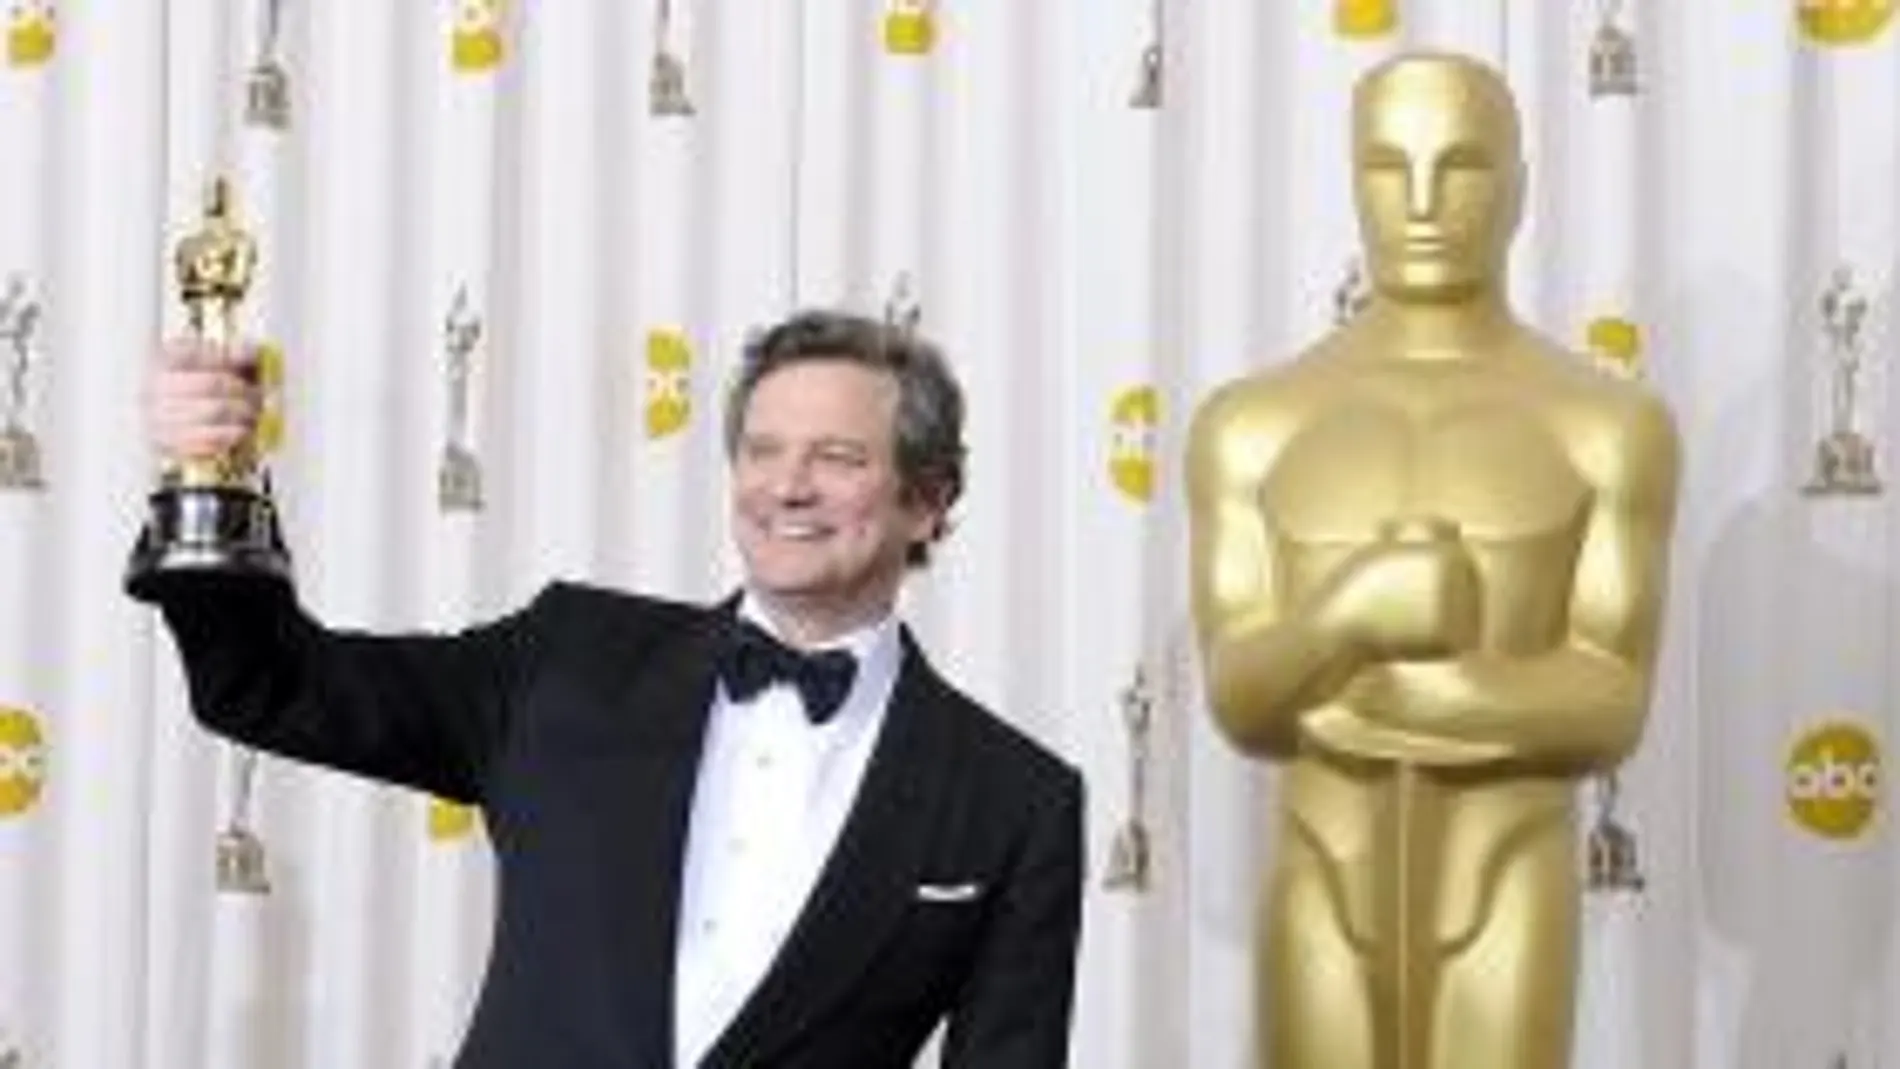 El actor británico Colin Firth se corona en Hollywood